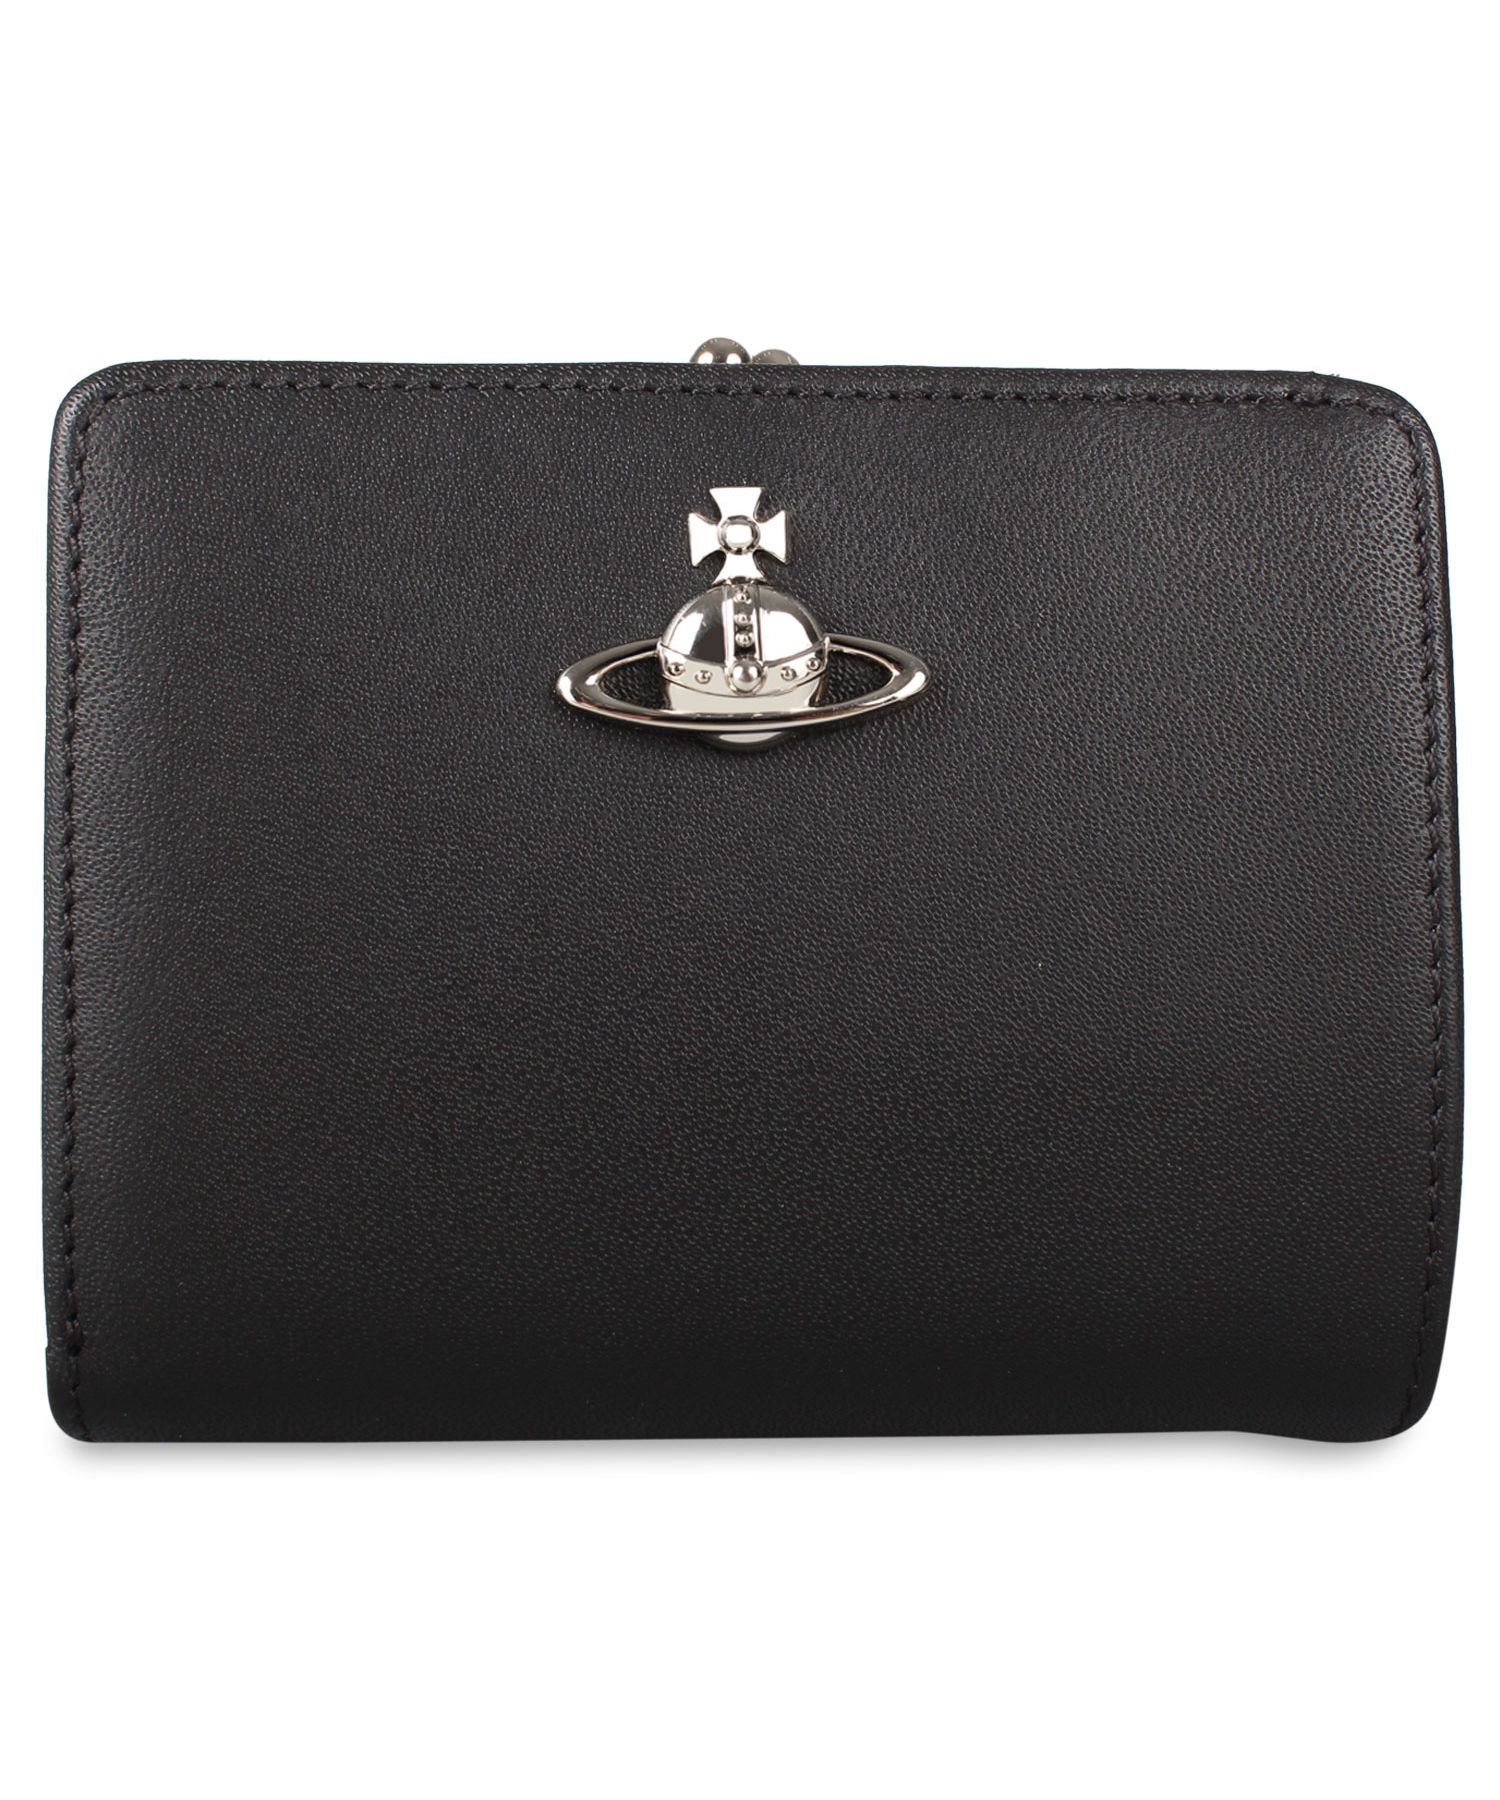 ヴィヴィアンウエストウッド Vivienne Westwood 二つ折り財布 がま口 メンズ レディース ALEX WALLET WITH FRAME  POCK